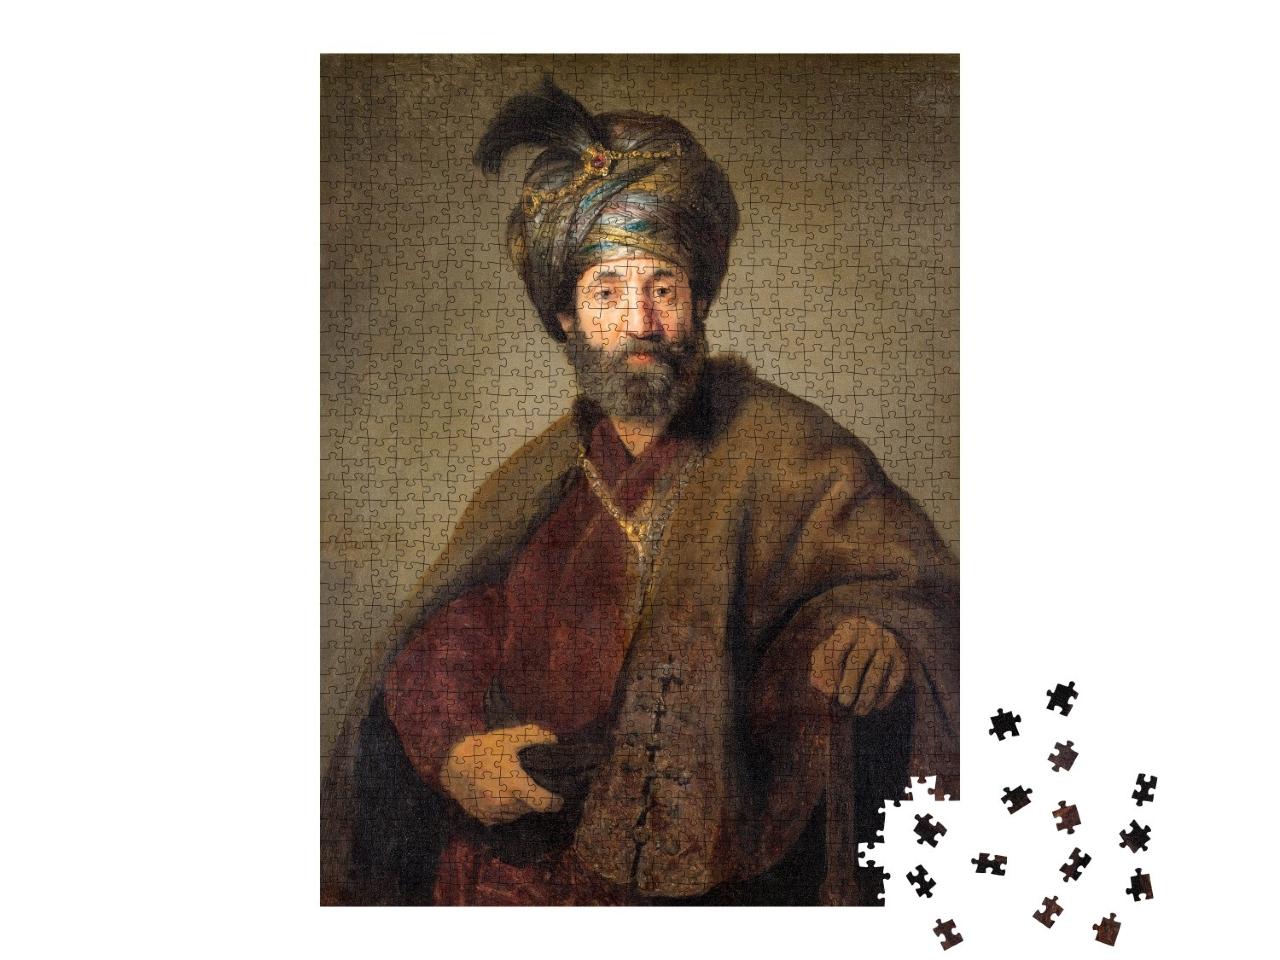 Puzzle 1000 Teile „Rembrandt - Mann im orientalischen Kostüm 2“